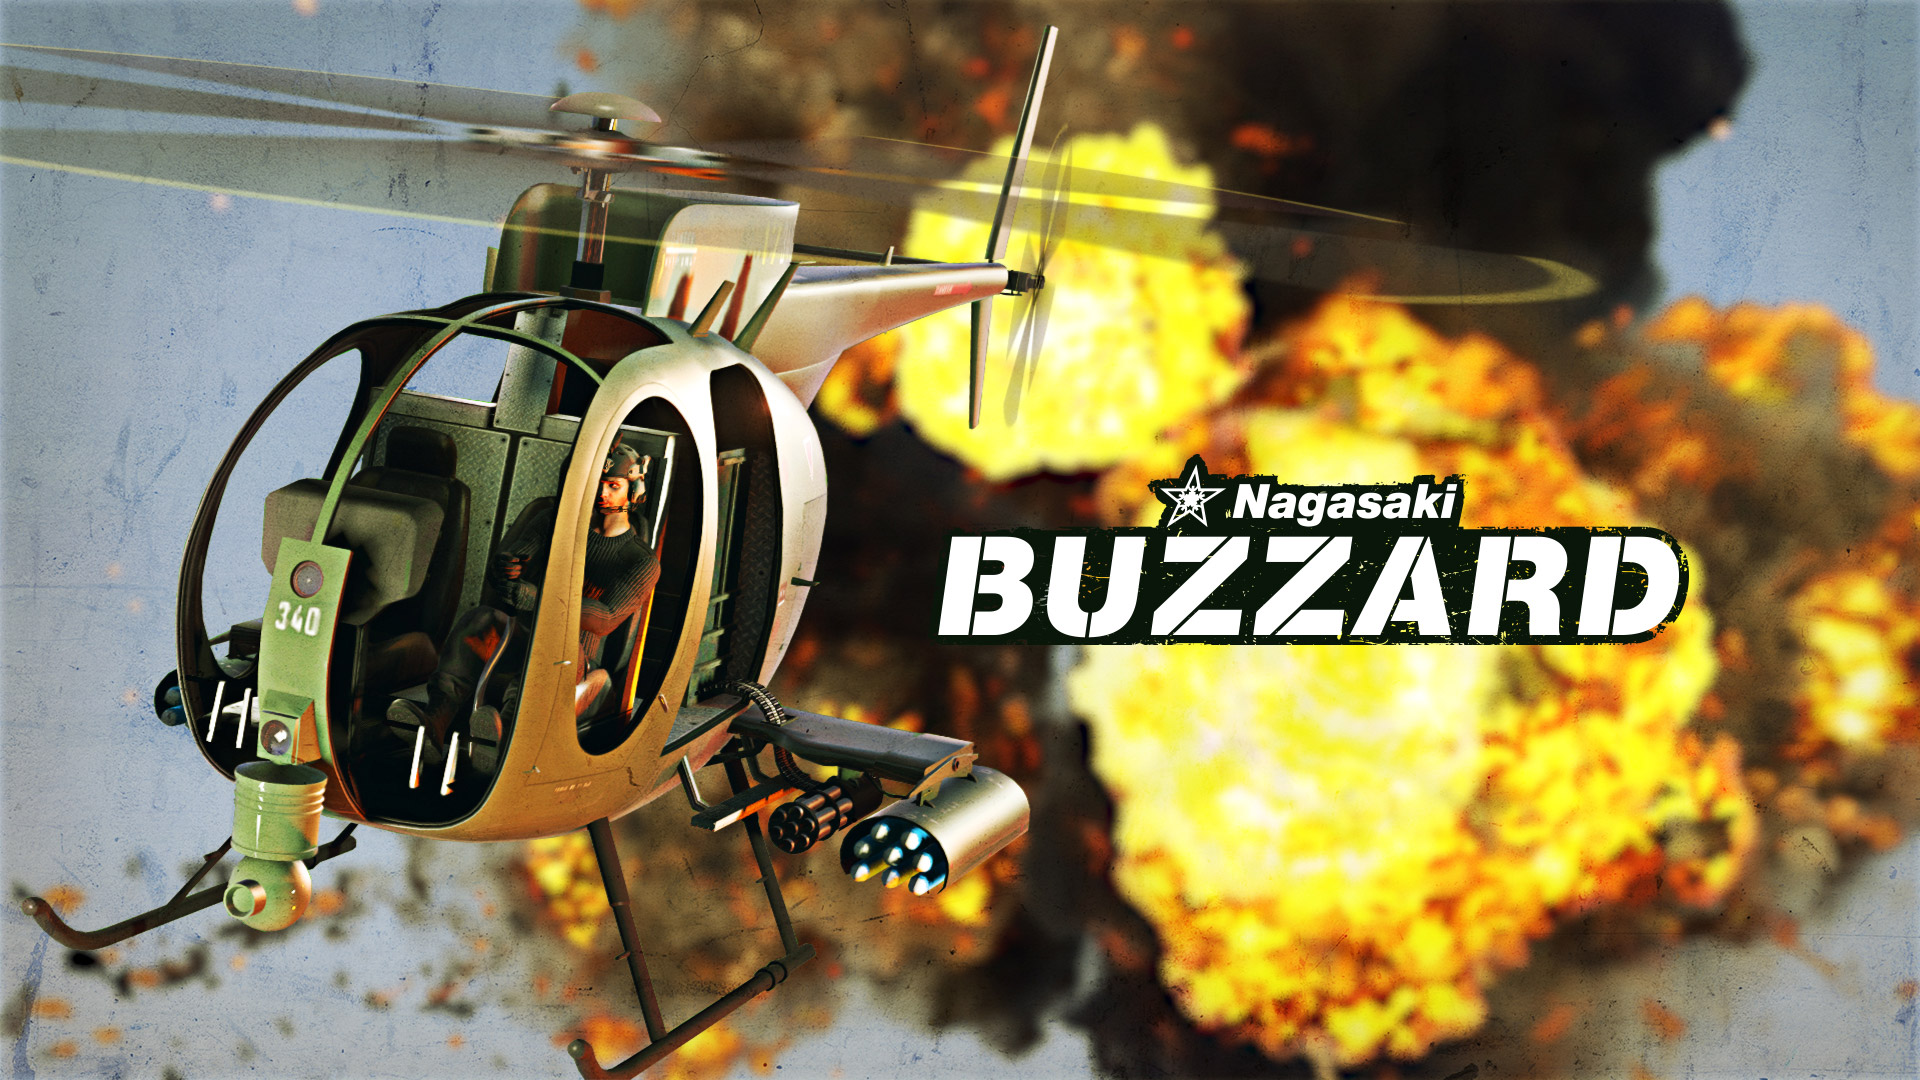 The Nagasaki Buzzard 40 Off Rockstar Games